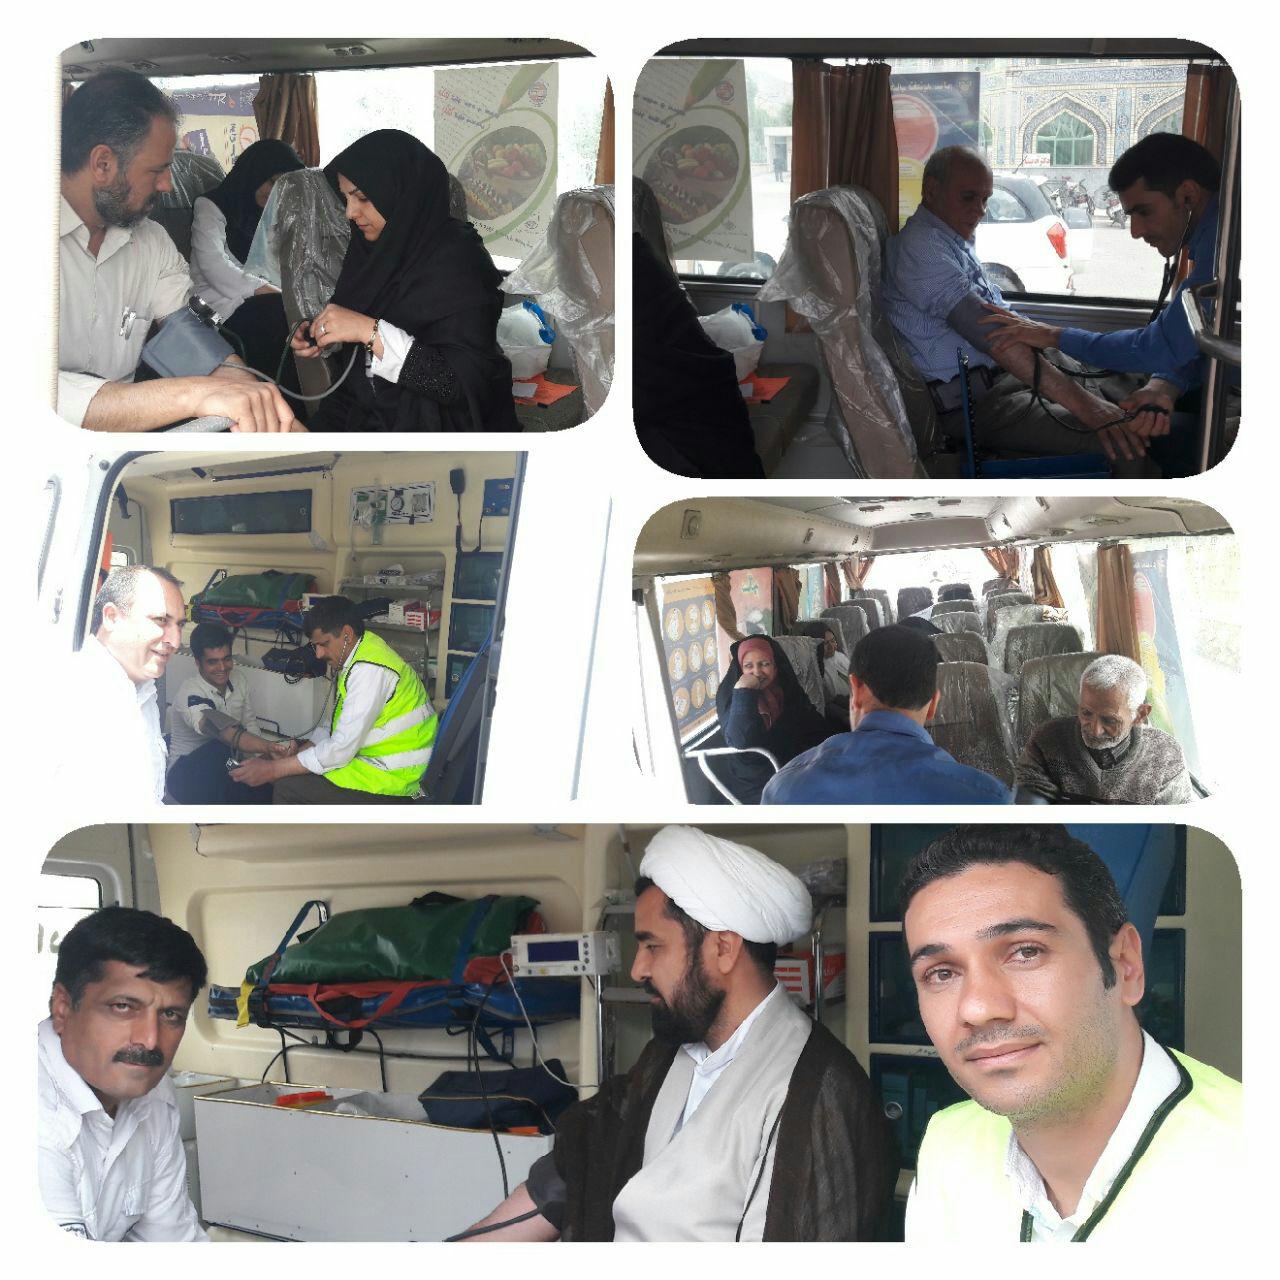 انجام خدمات سیار خود مراقبتی در شهر علویجه توسط اتوبوس سیار خدمات سلامت شبکه بهداشت ودرمان شهرستان نجف آباد  جمعه 97/2/7